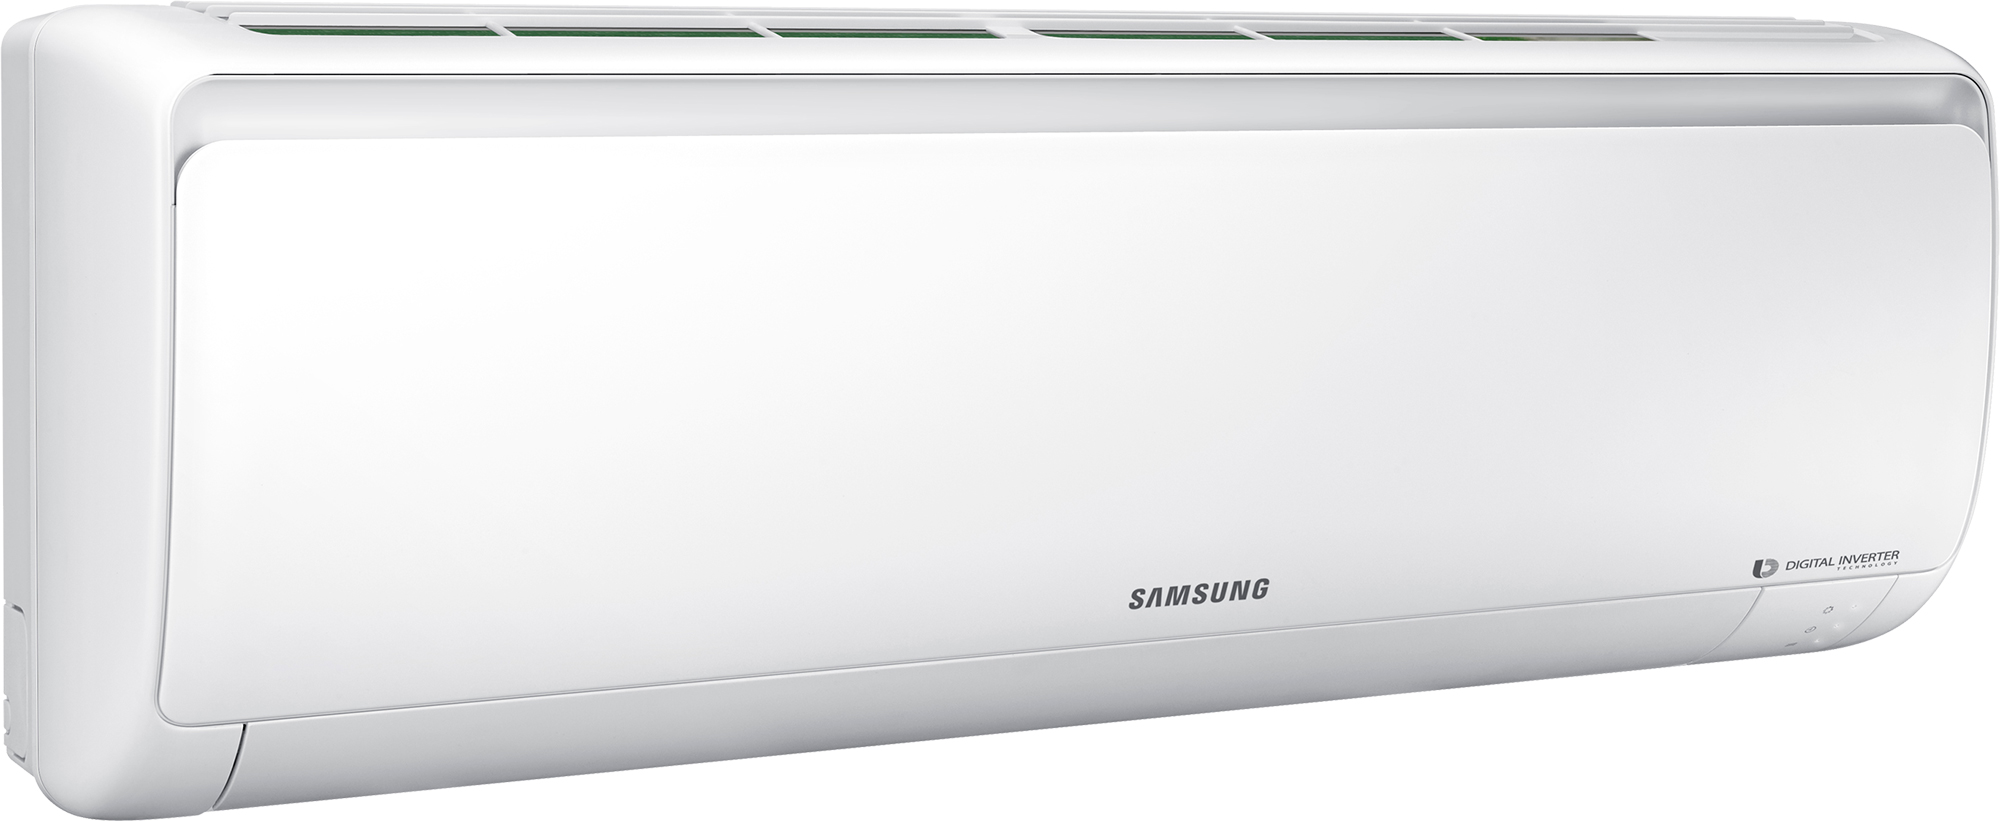 Кондиционер сплит-система Samsung AR09RSFPAWQNER / AR09RSFPAWQXER отзывы - изображения 5